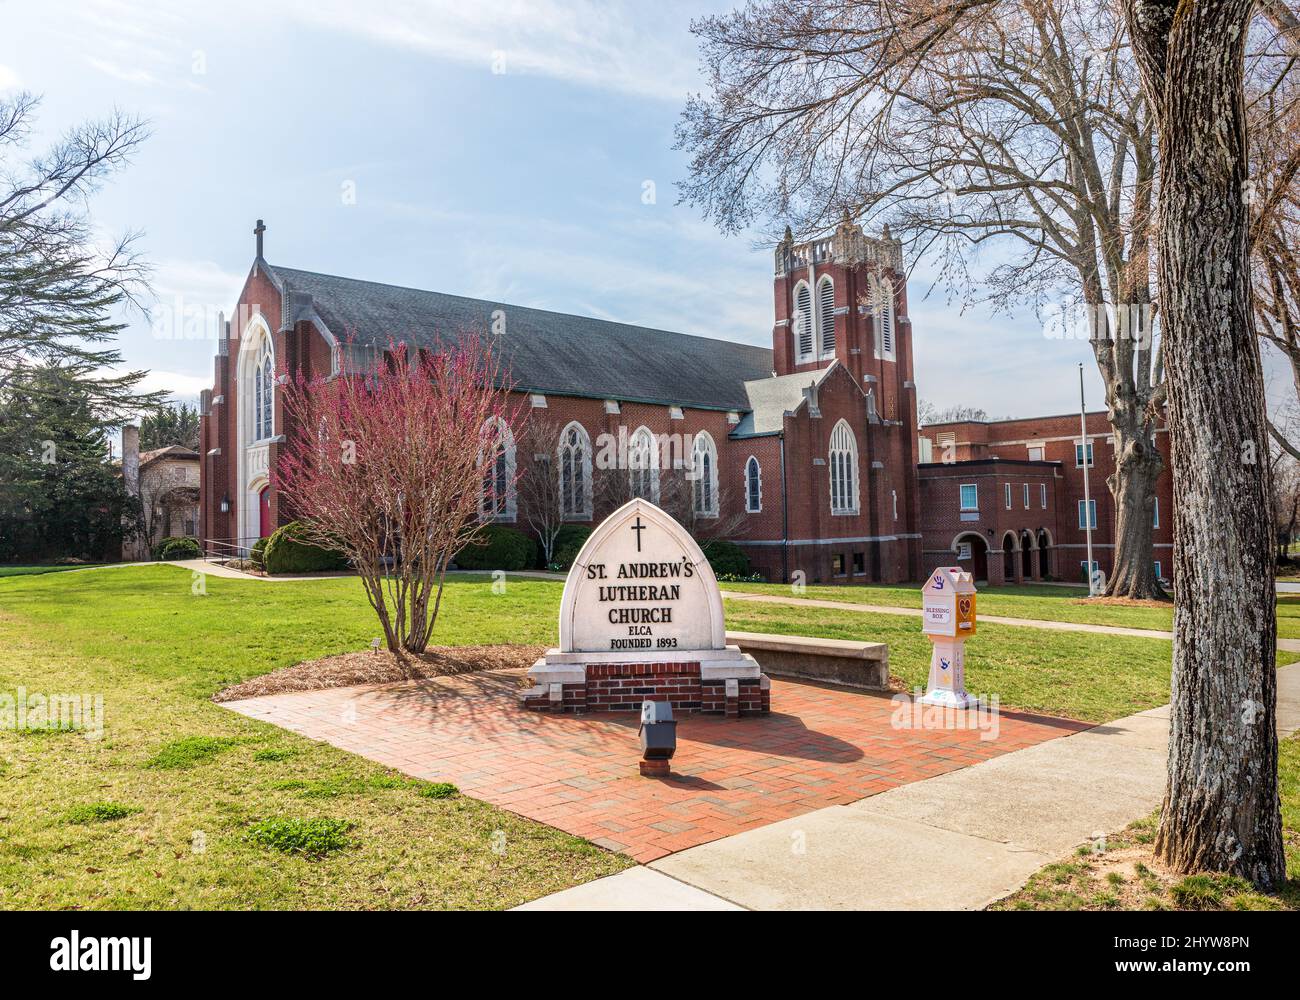 HICKORY, NC, USA-8 MARZO 2022: St. Andrew's Lutheran Church, vicino al campus della Lenoir-Rhyne University. Mostra il cartello del monumento e l'edificio dietro. Foto Stock